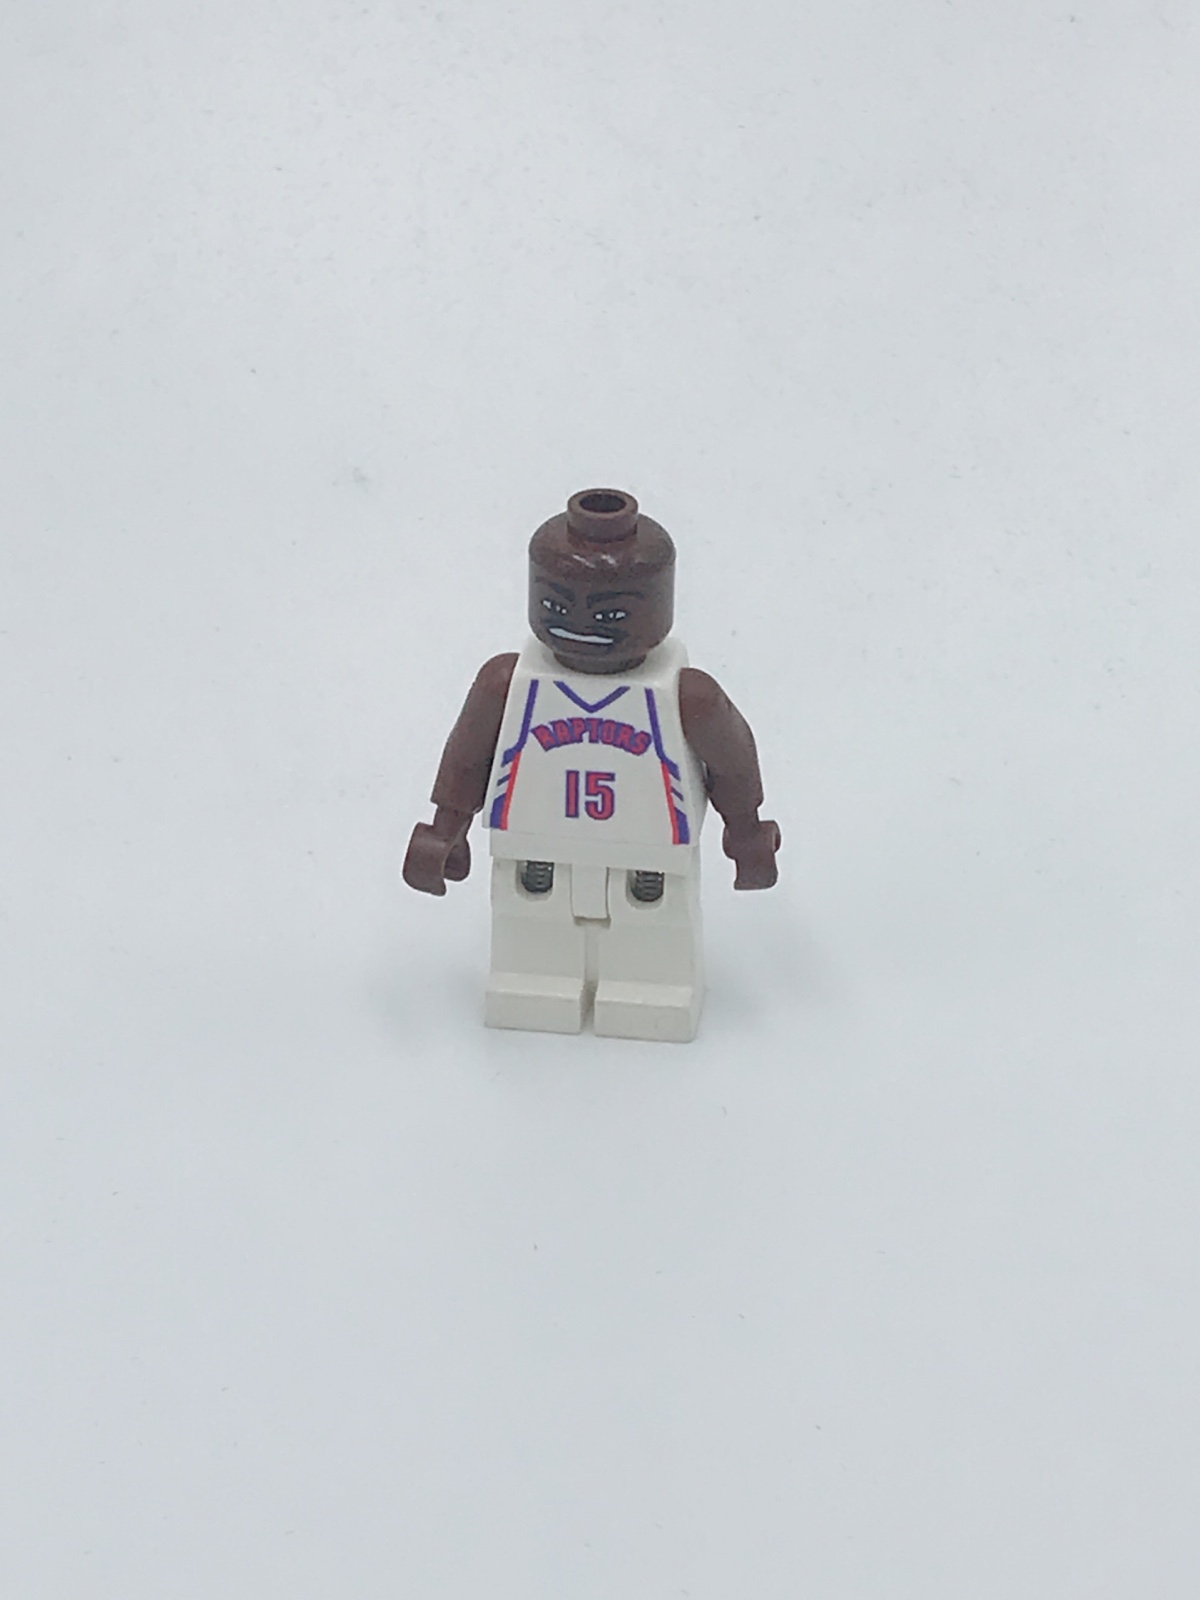 乐高Lego 绝版NBA 篮球弹簧腿人仔 nba039 国王队 15号 文斯卡特